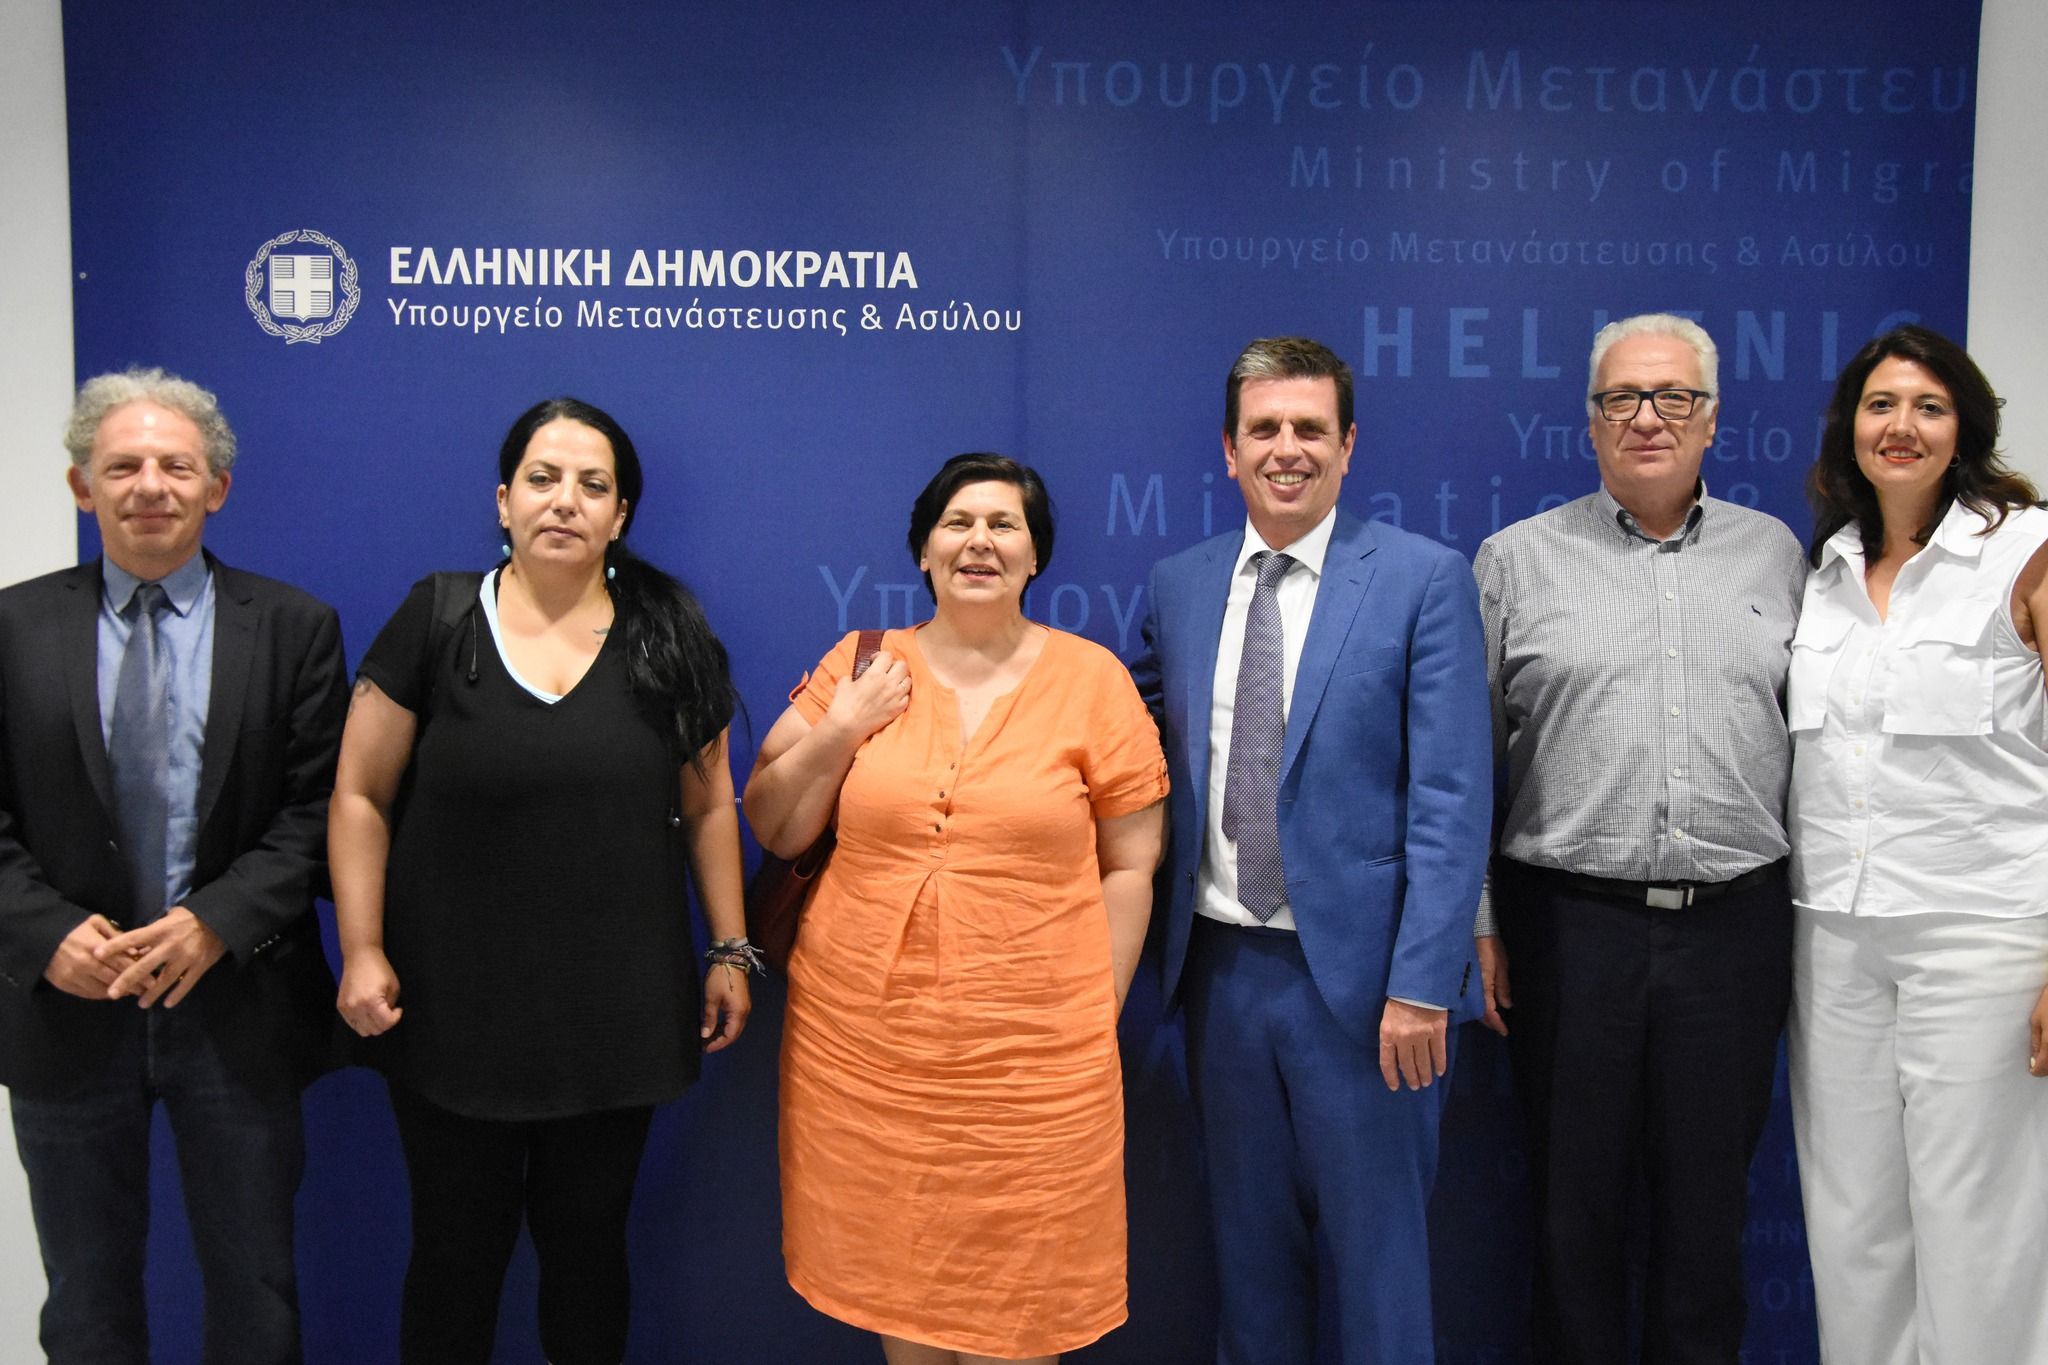 Ομαδική φωτογραφία του Υπουργού με το Προεδρείο της ΕΕΔΑ και τους συμμετέχοντες στη συνάντηση